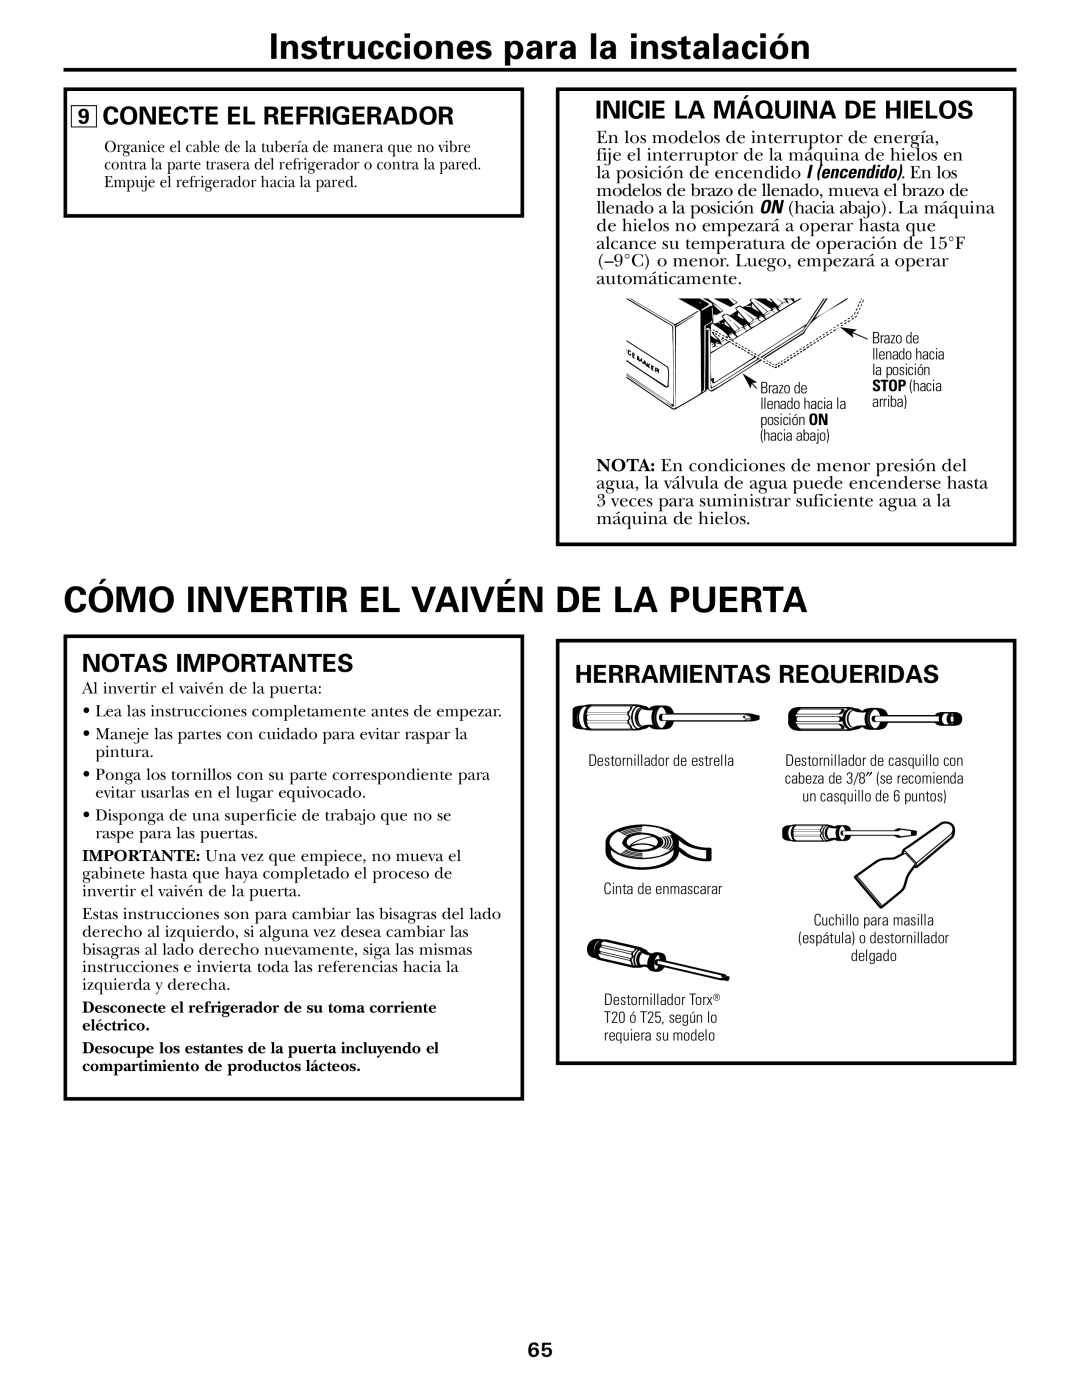 GE WX08X10025, WX08X10015 manual Cómo Invertir EL Vaivén DE LA Puerta, Conecte EL Refrigerador, Inicie LA Máquina DE Hielos 